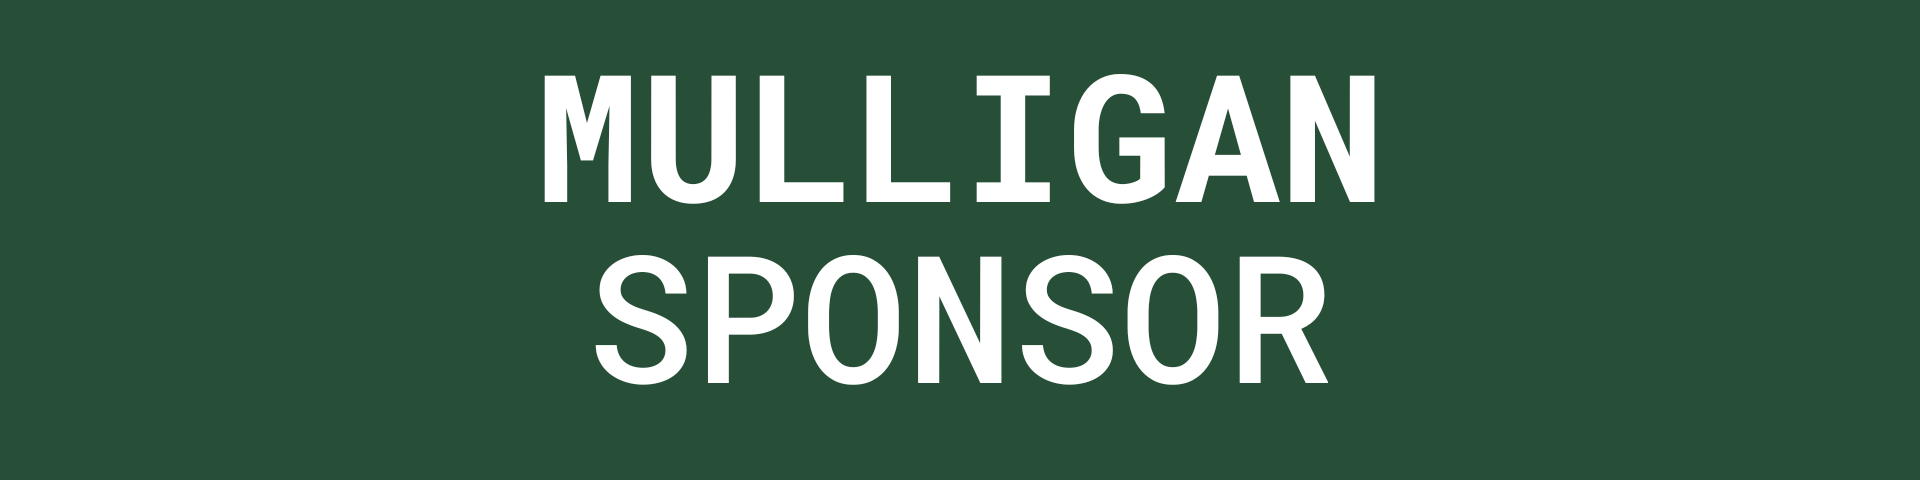 golf-sponsorship-mulligan.png